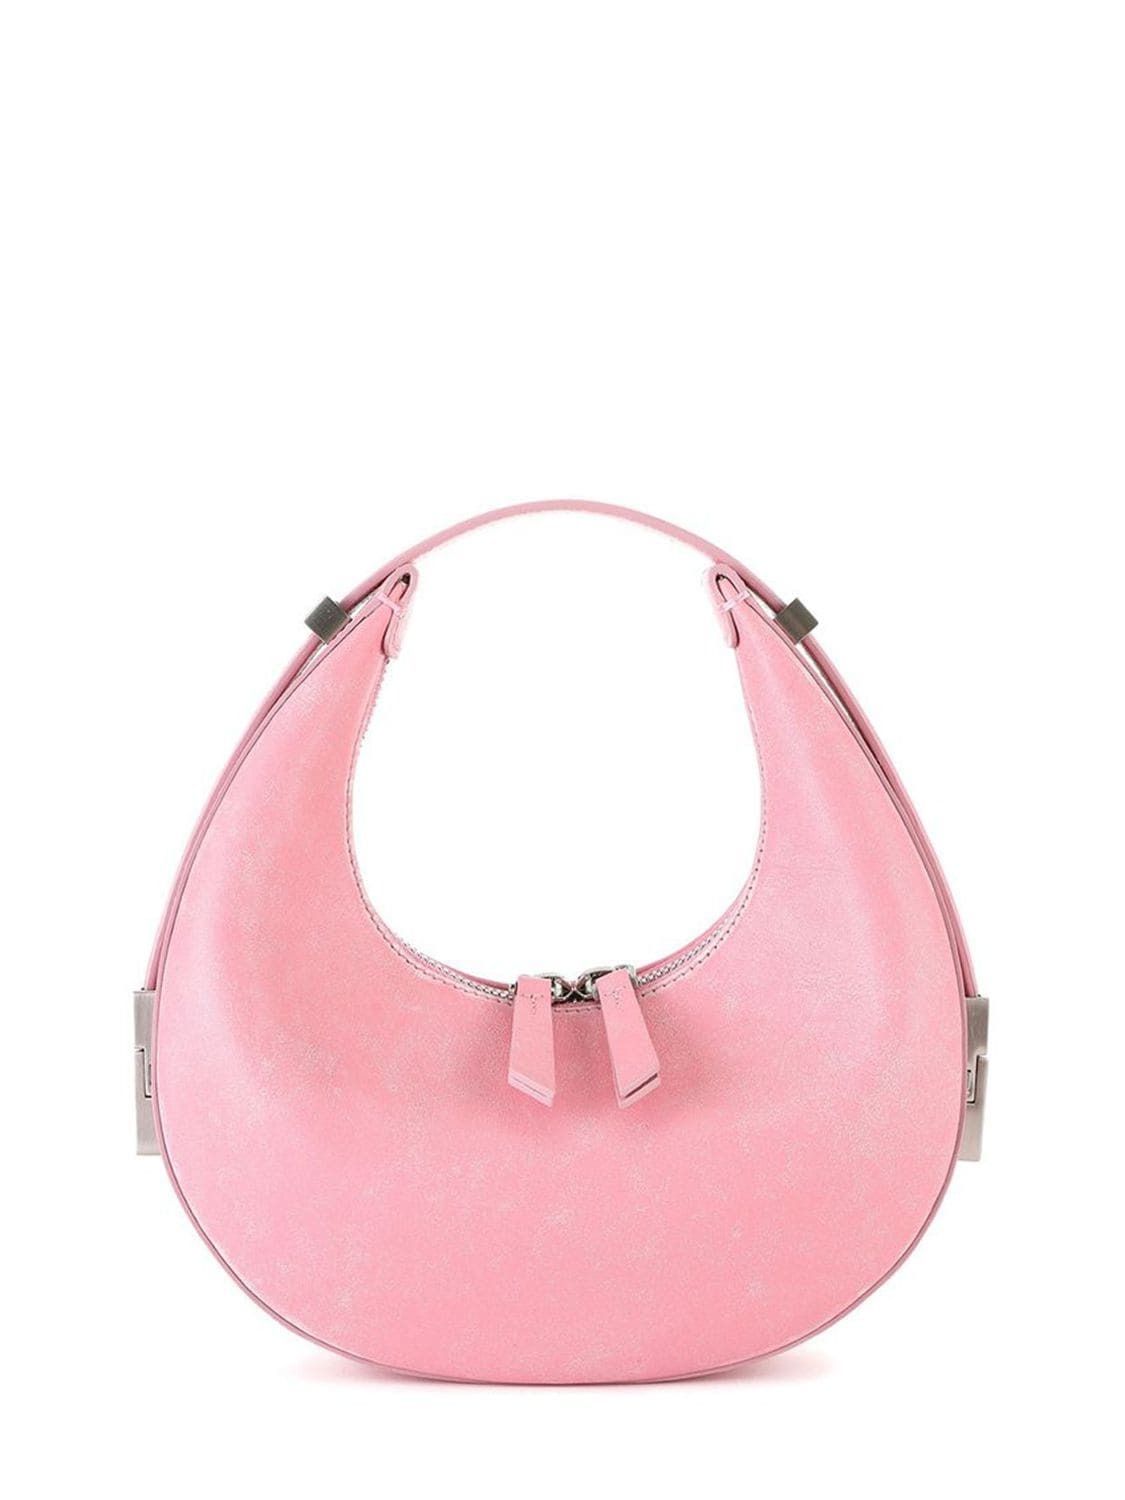 OSOI Mini Toni Leather Top Handle Bag in pink